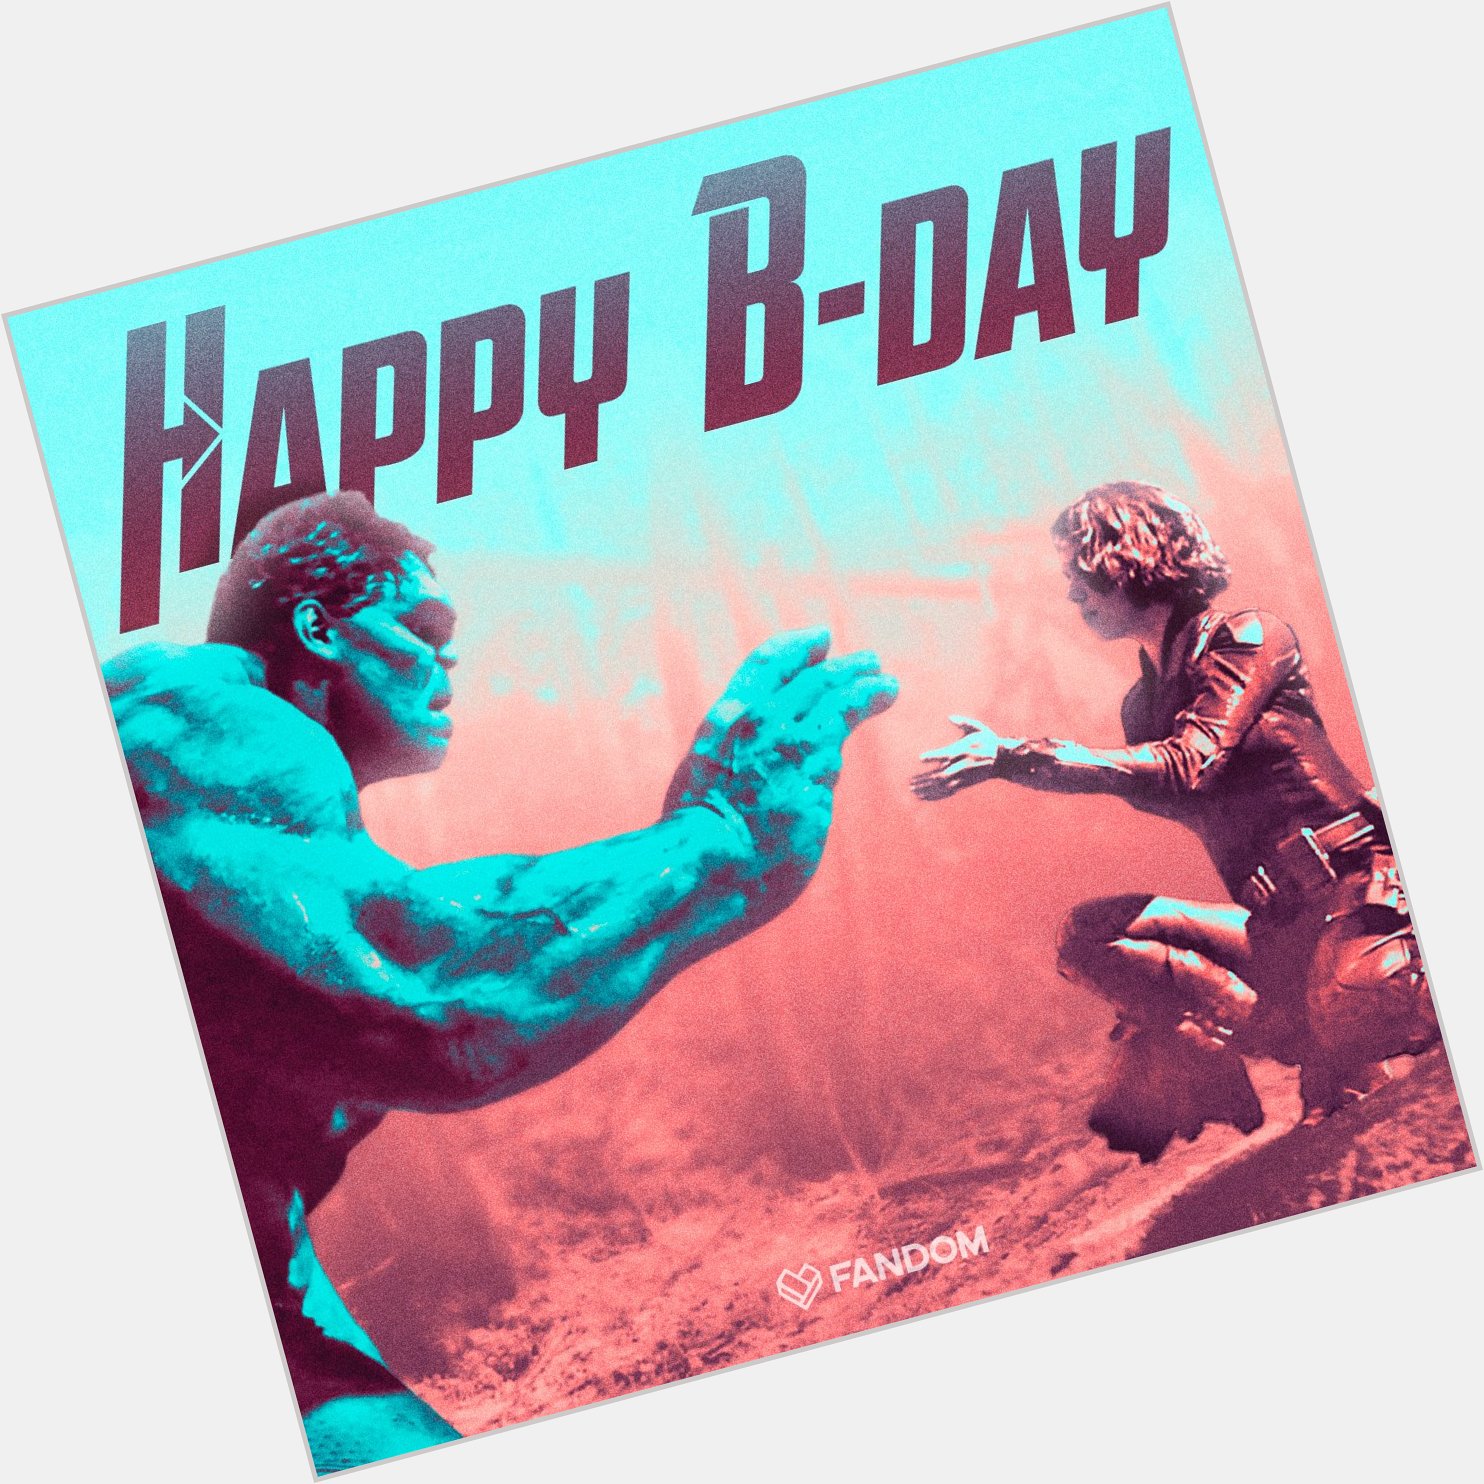 Happy Birthday to two legendary Avengers Mark Ruffalo and Scarlett Johansson  